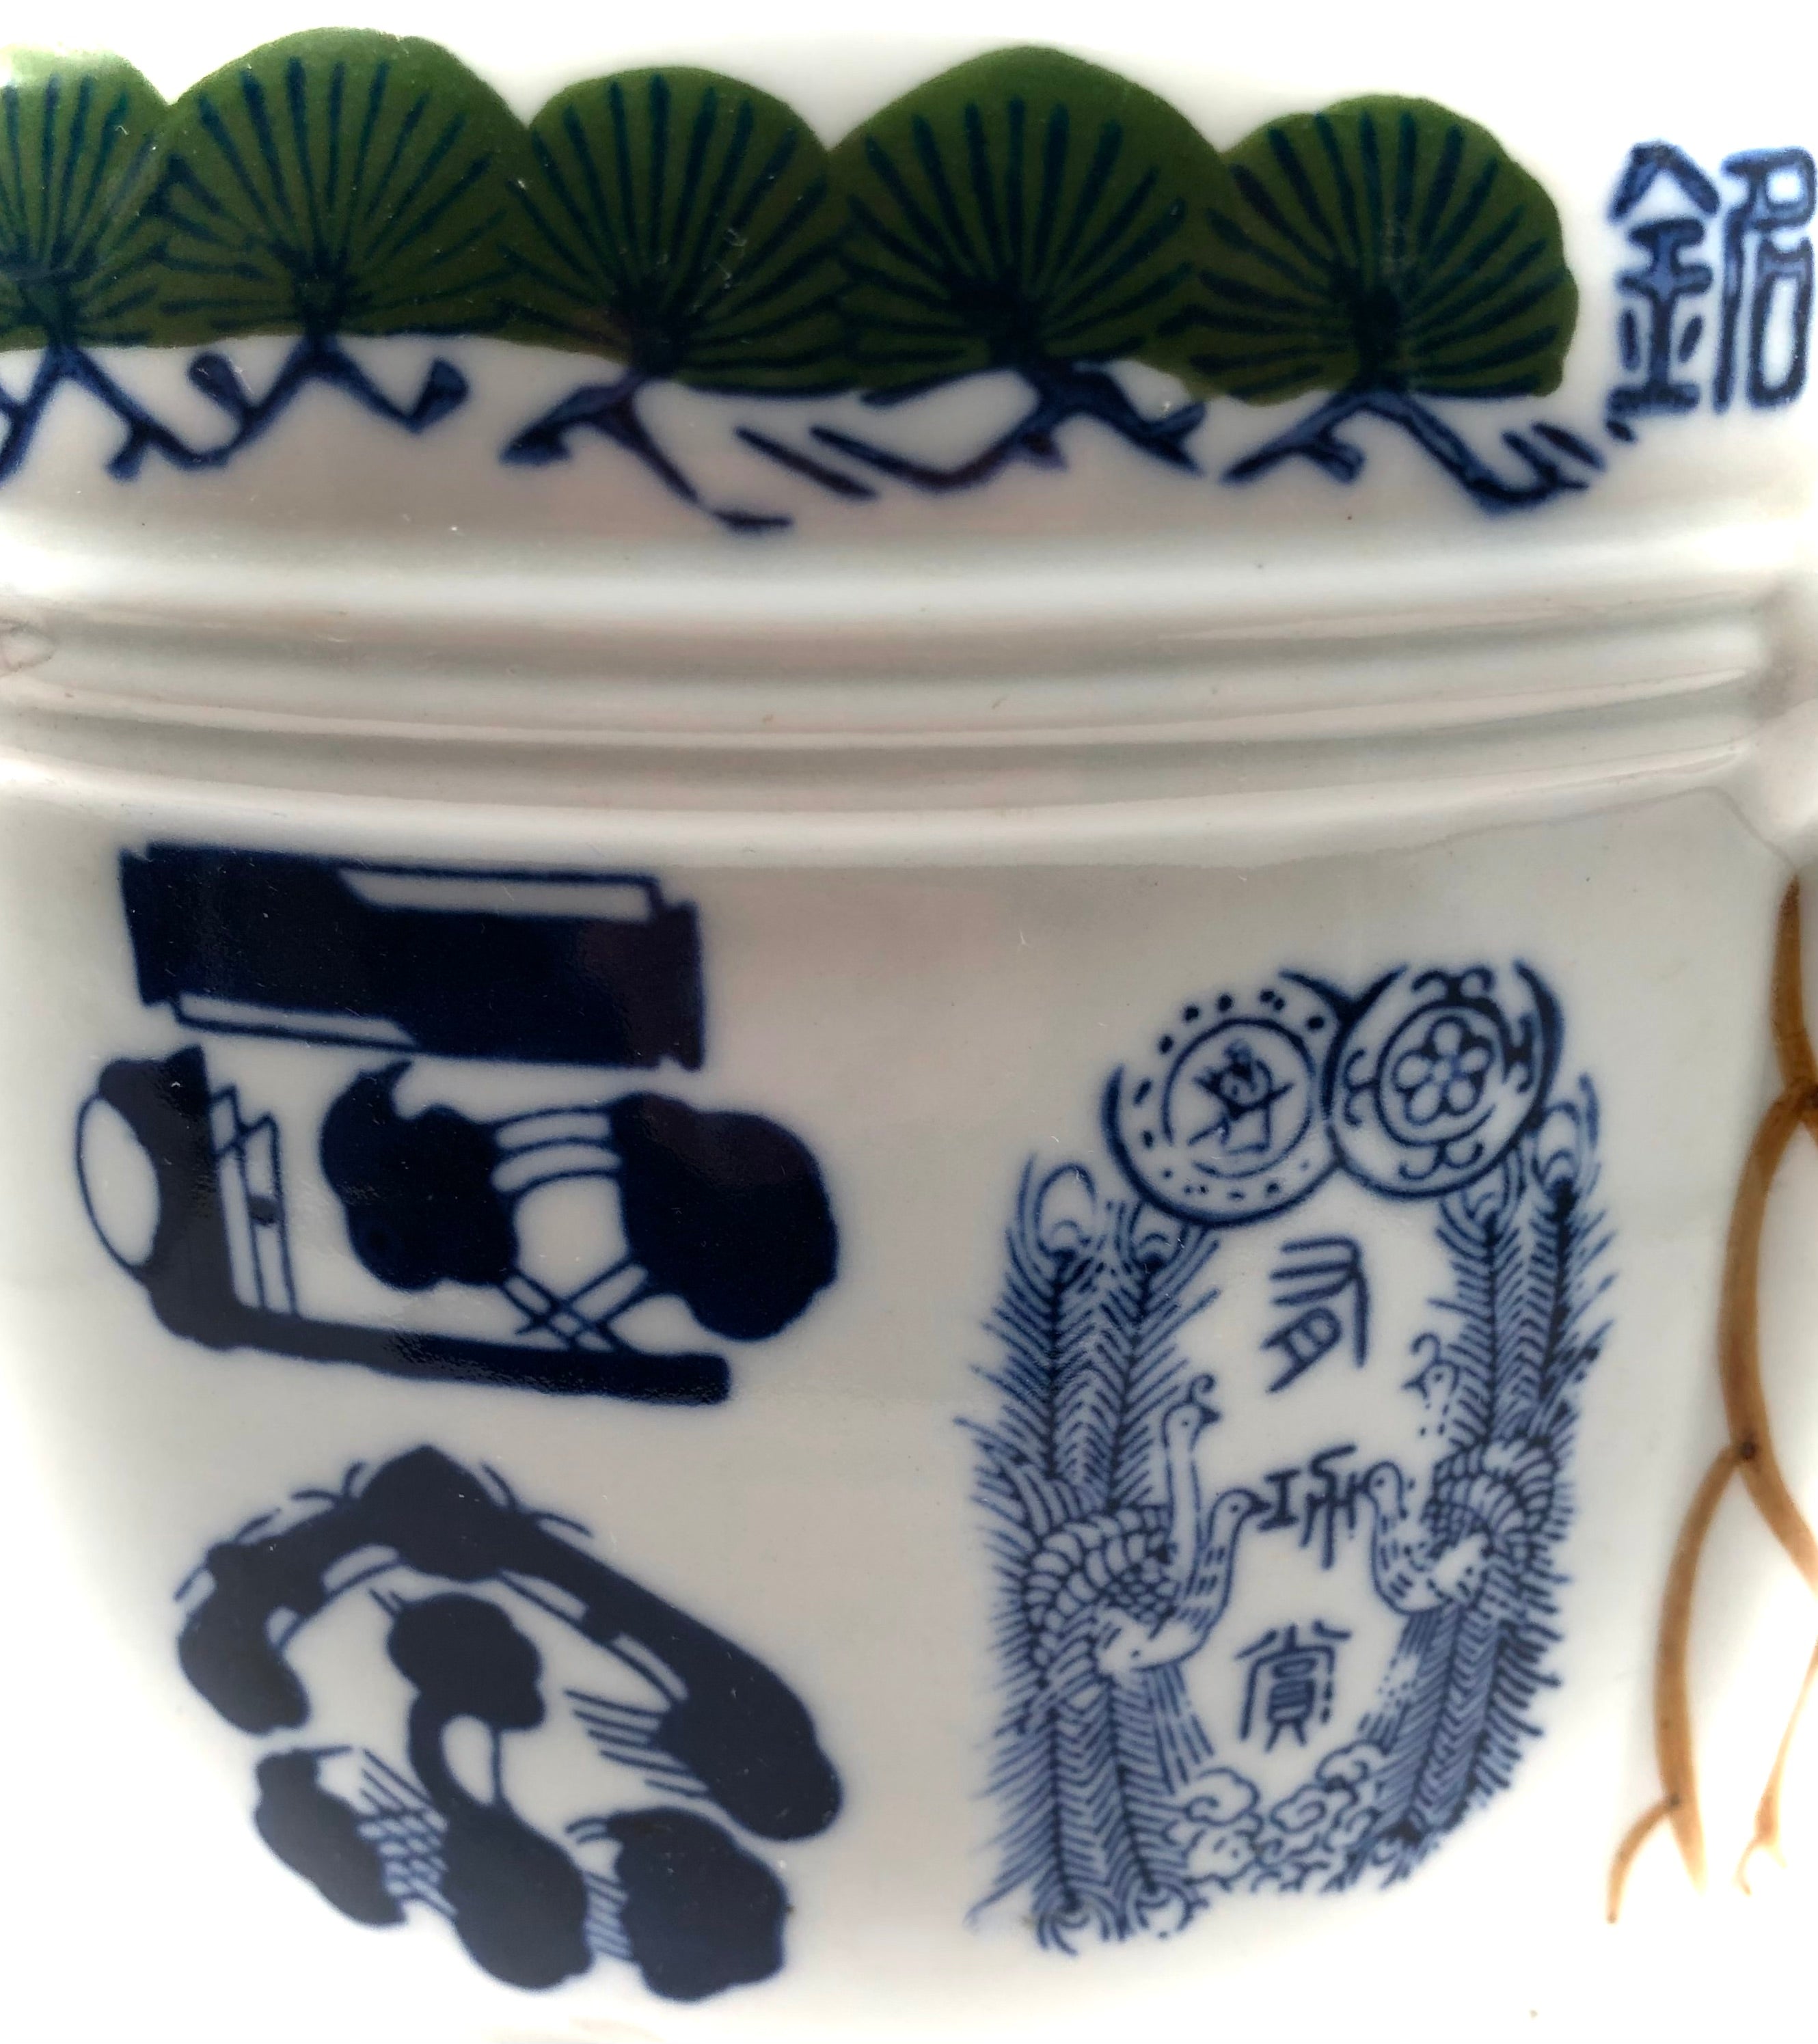 Antique Japanese Blue and White Porcelain Sake Cask / Taru Porcelain Barrel Dispenser